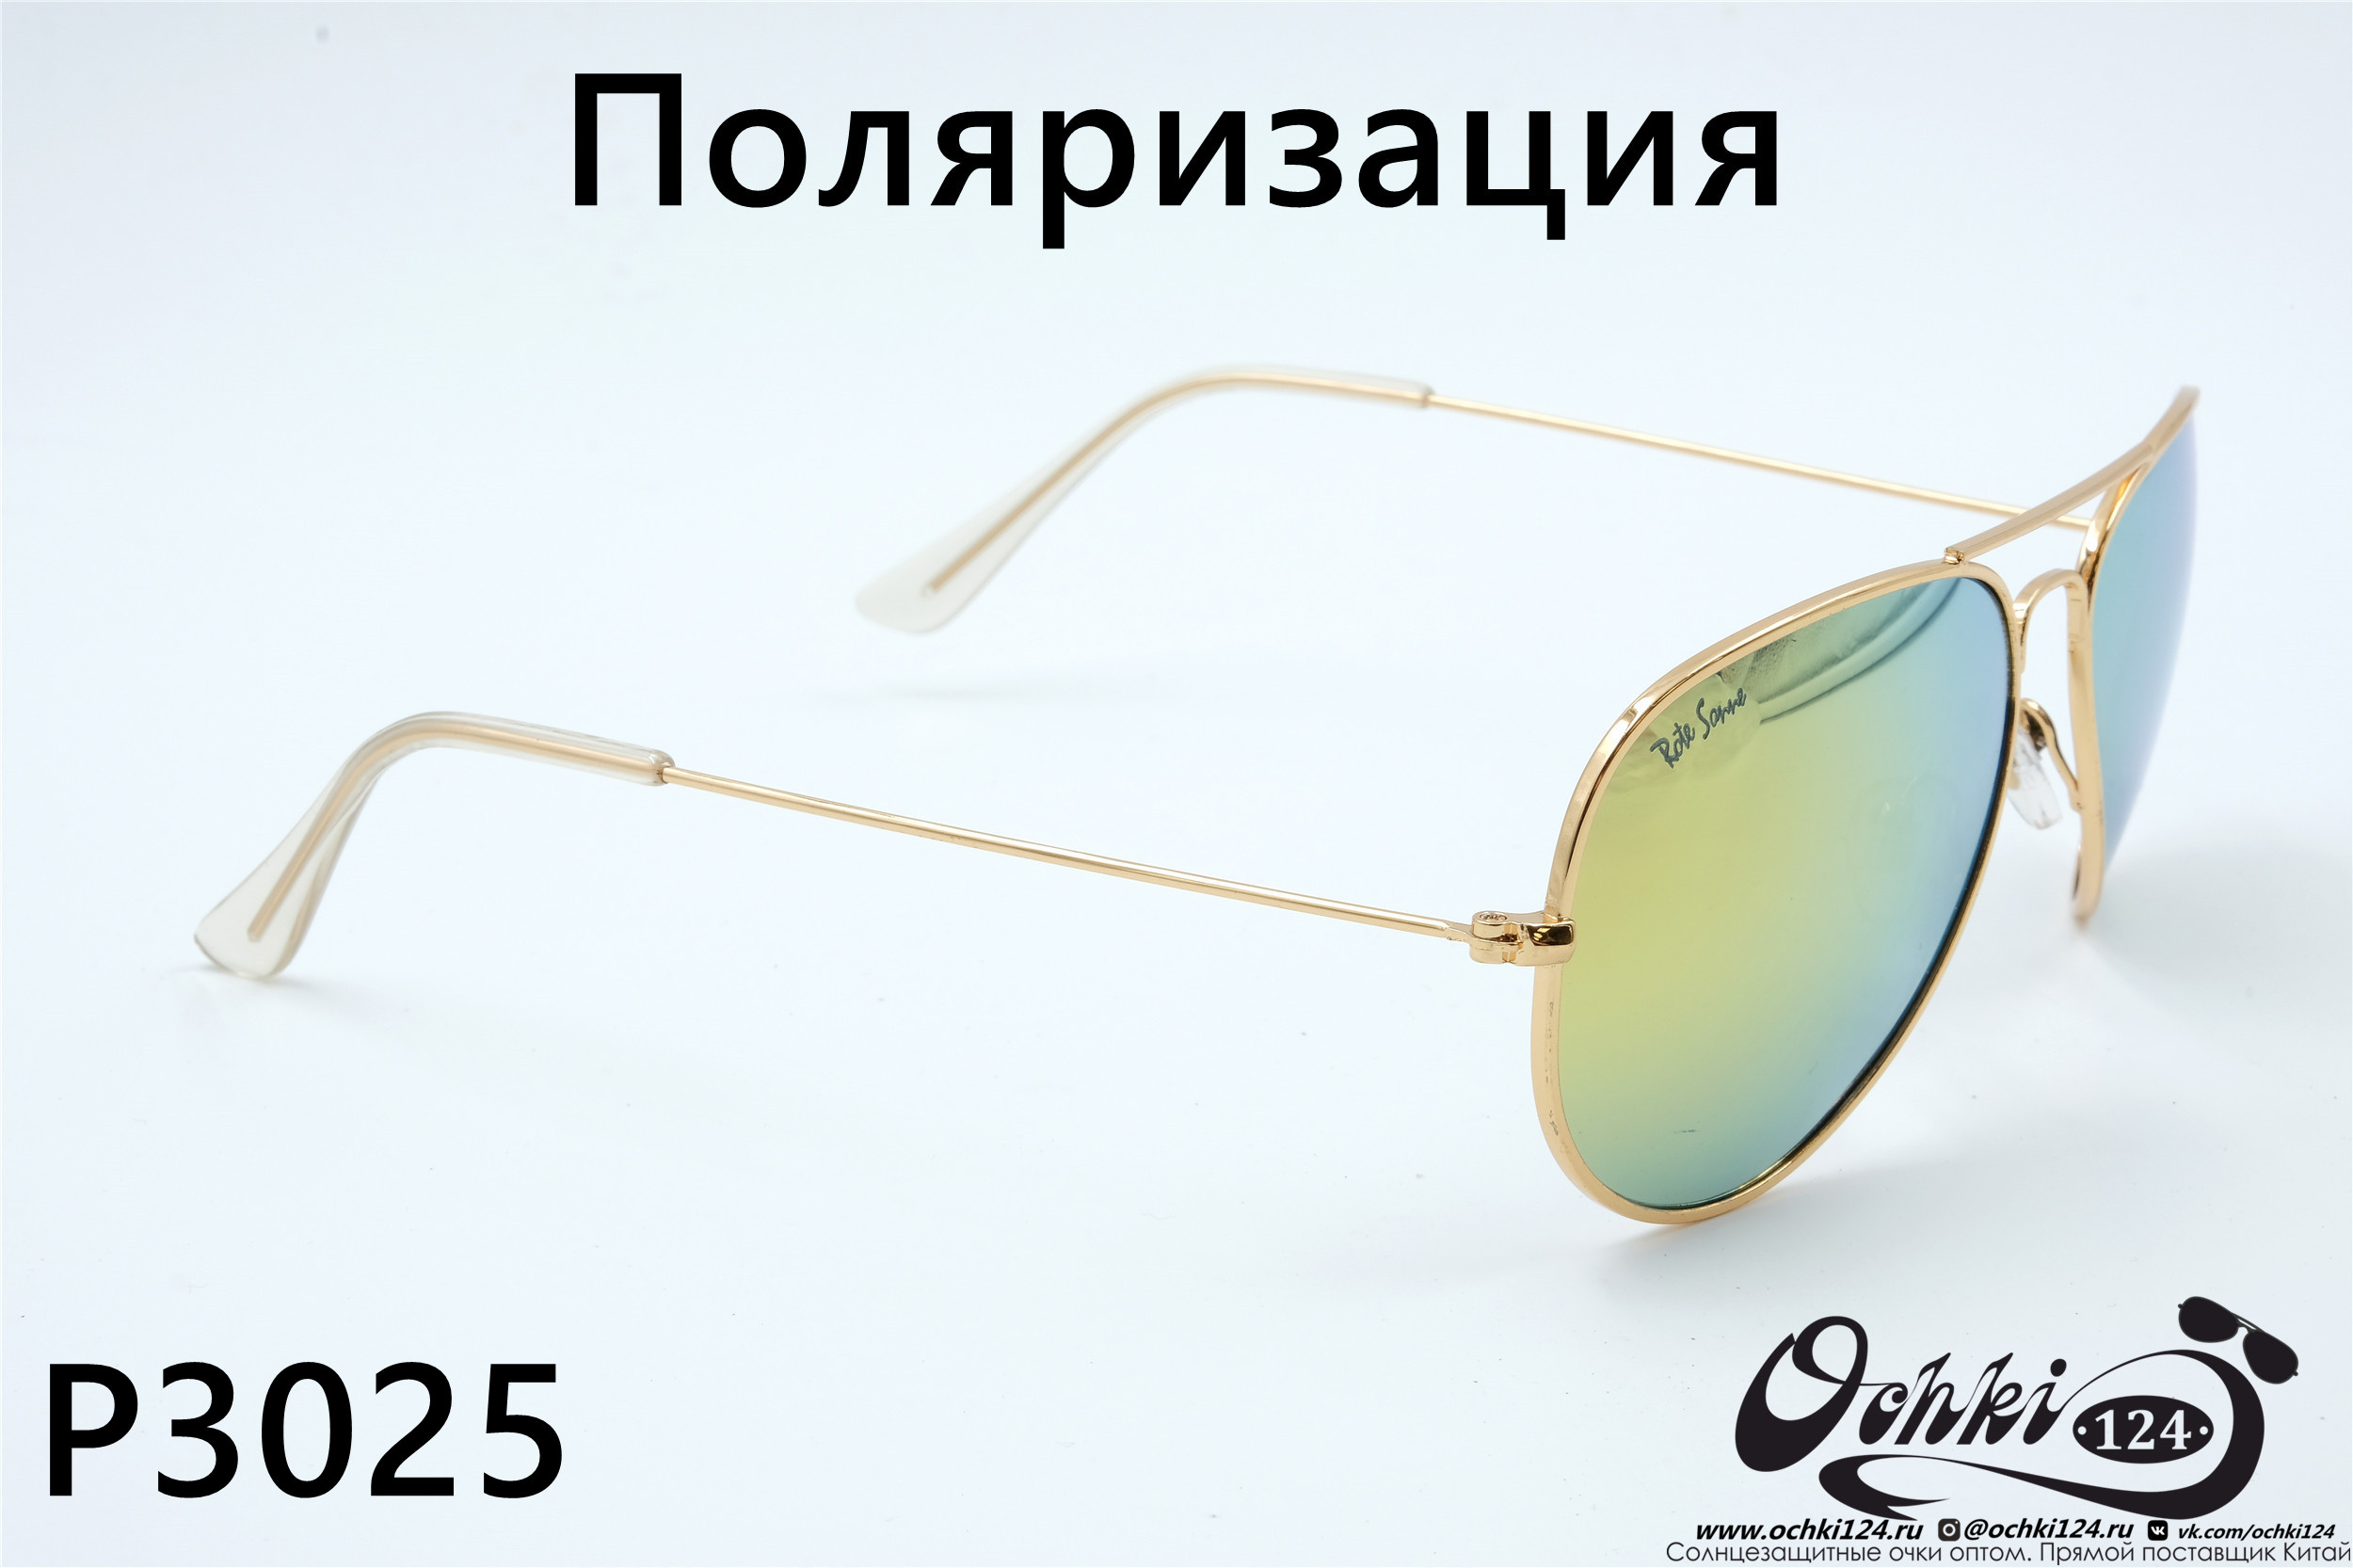  Солнцезащитные очки картинка 2022 Унисекс Поляризованные Авиаторы Rote Sonne P3025-1 